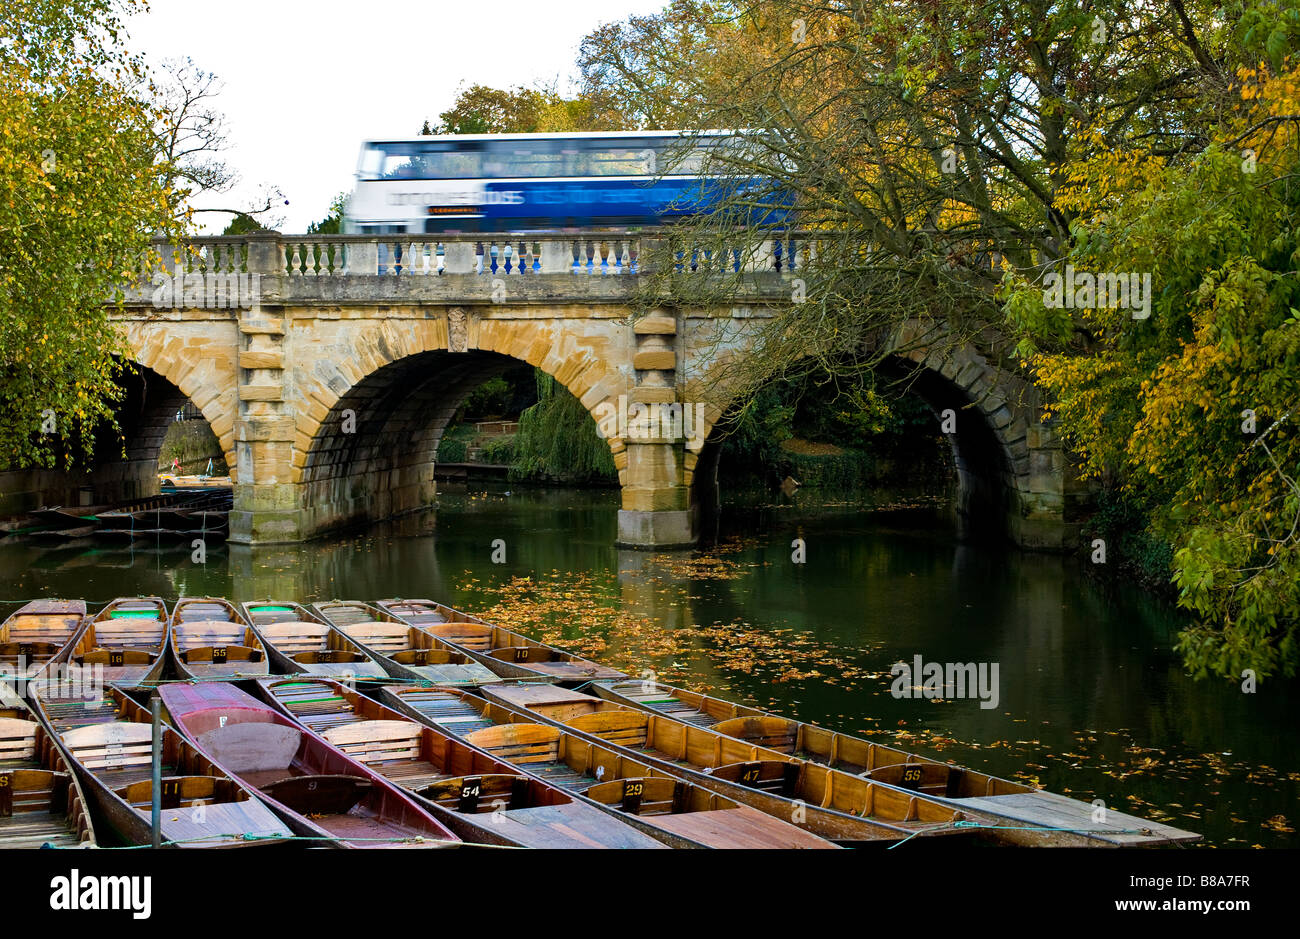 Le bus traverse le pont de la Madeleine avec plates amarrés dans la rivière Cherwell à Oxford, Angleterre, Royaume-Uni. Banque D'Images